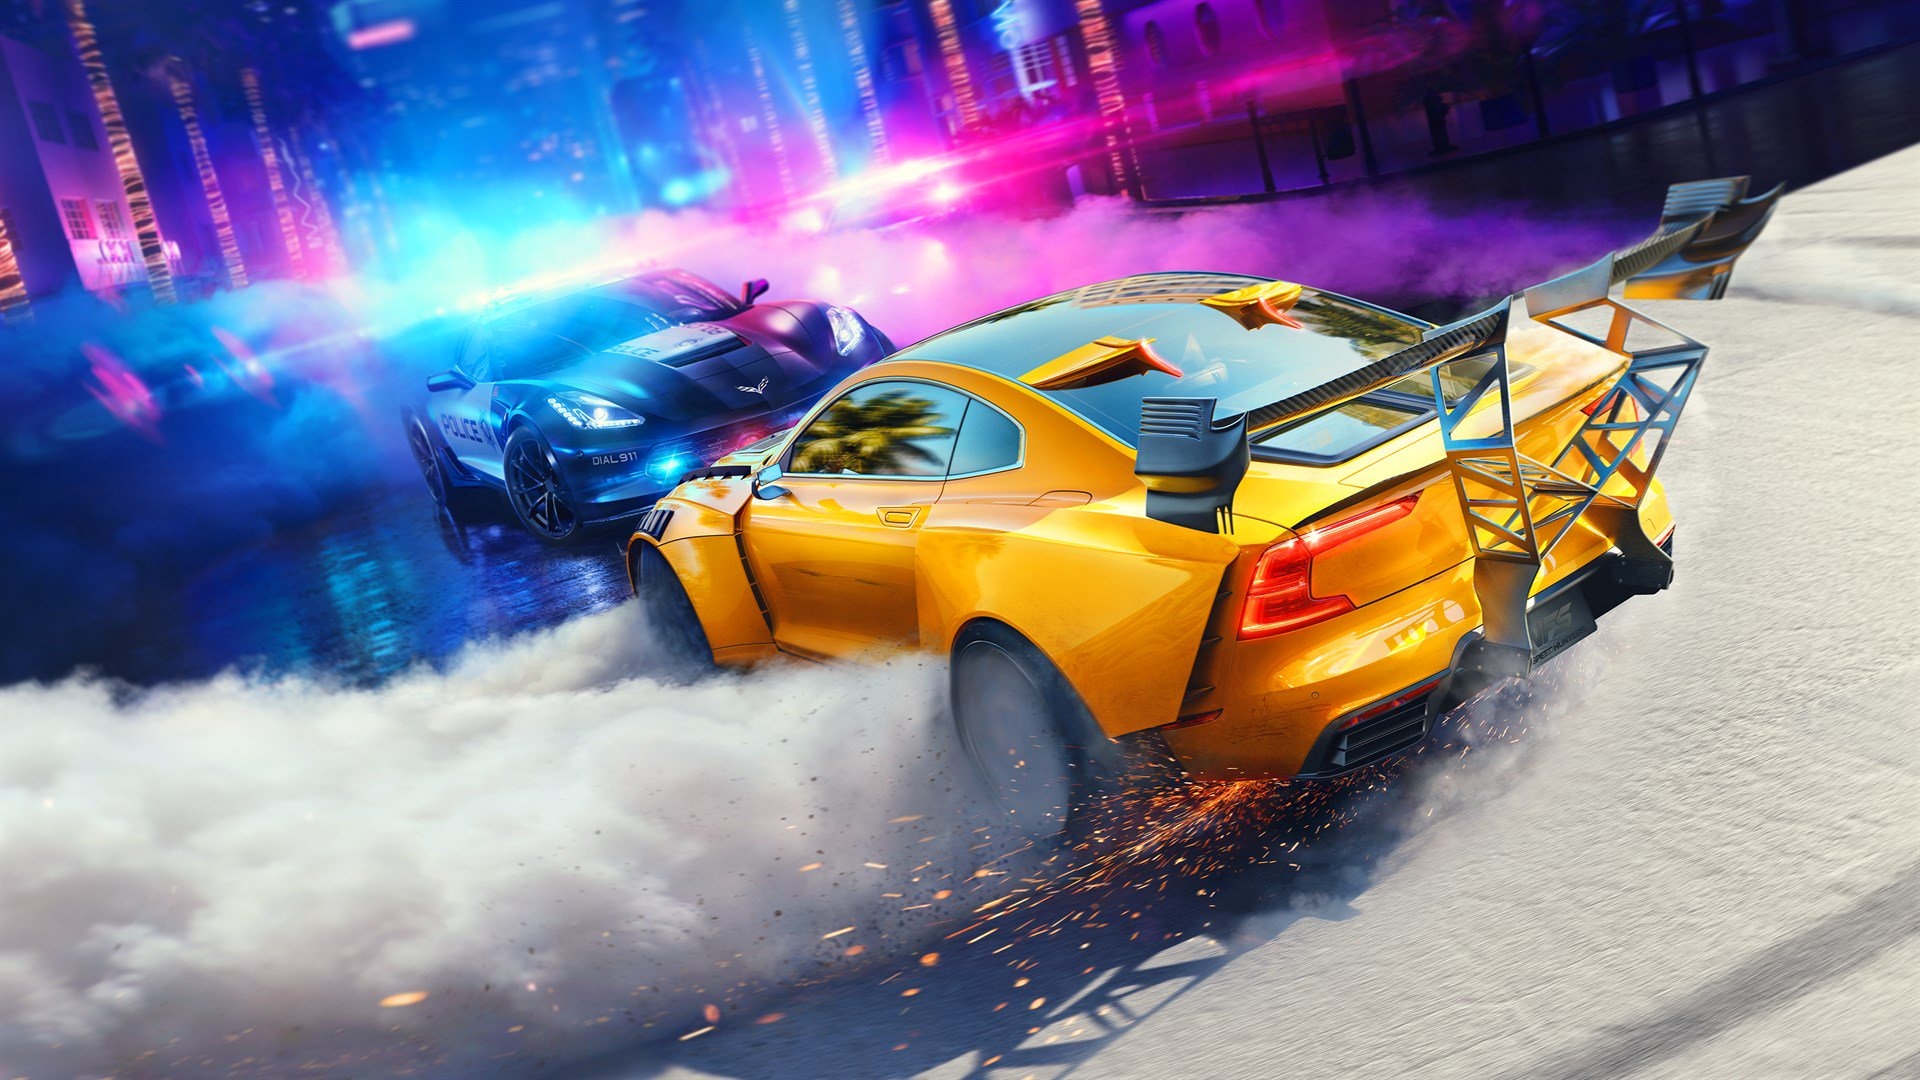 Скриншоты Need for Speed: Heat - картинки, арты, обои PLAYER ONE изображени...